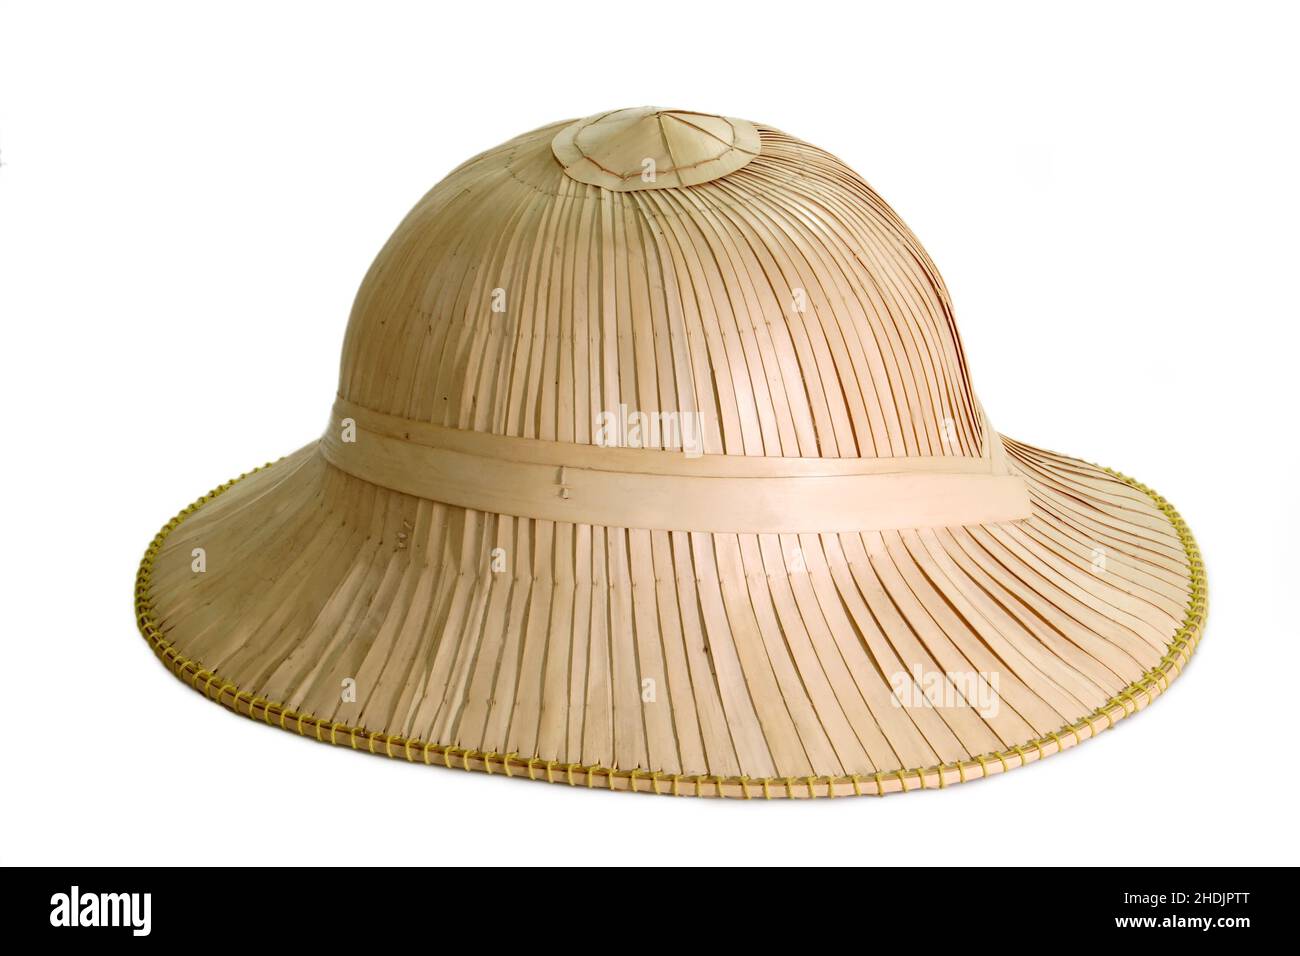 chapeau, coiffures, casque de pième, chapeau tropical, chapeaux,coiffures, casques, chapeaux tropicaux Banque D'Images